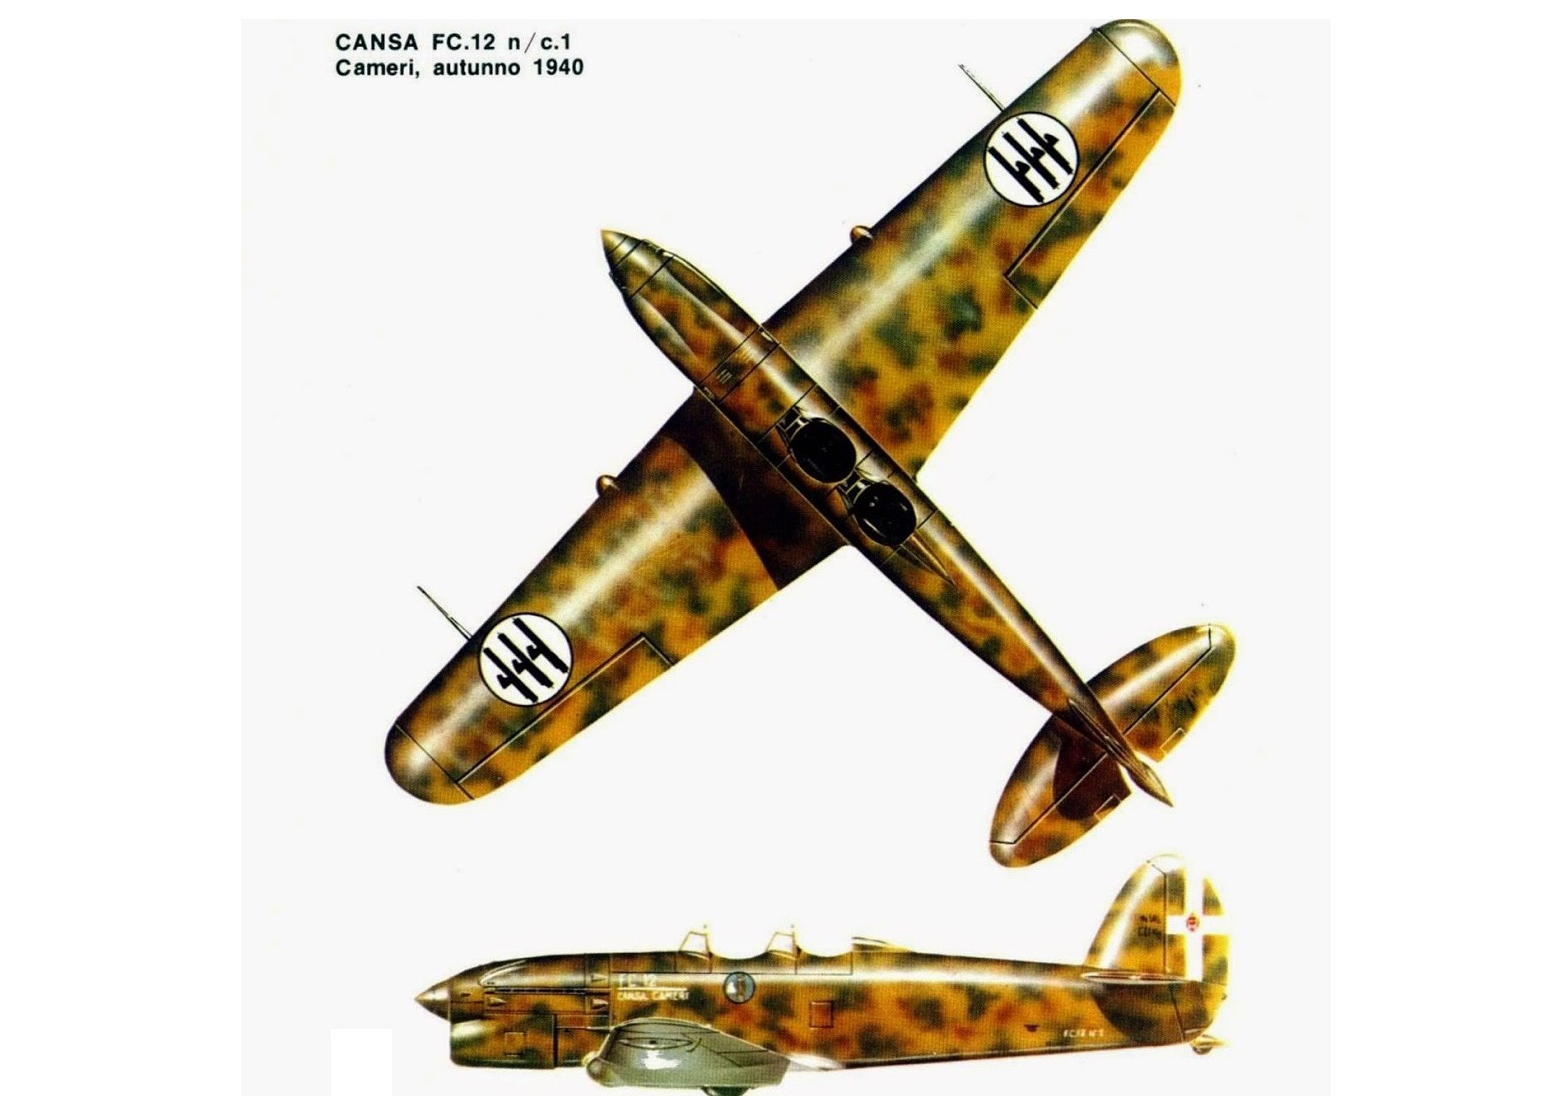 Опытный учебный самолет и пикирующий бомбардировщик CANSA/FIAT FC.12